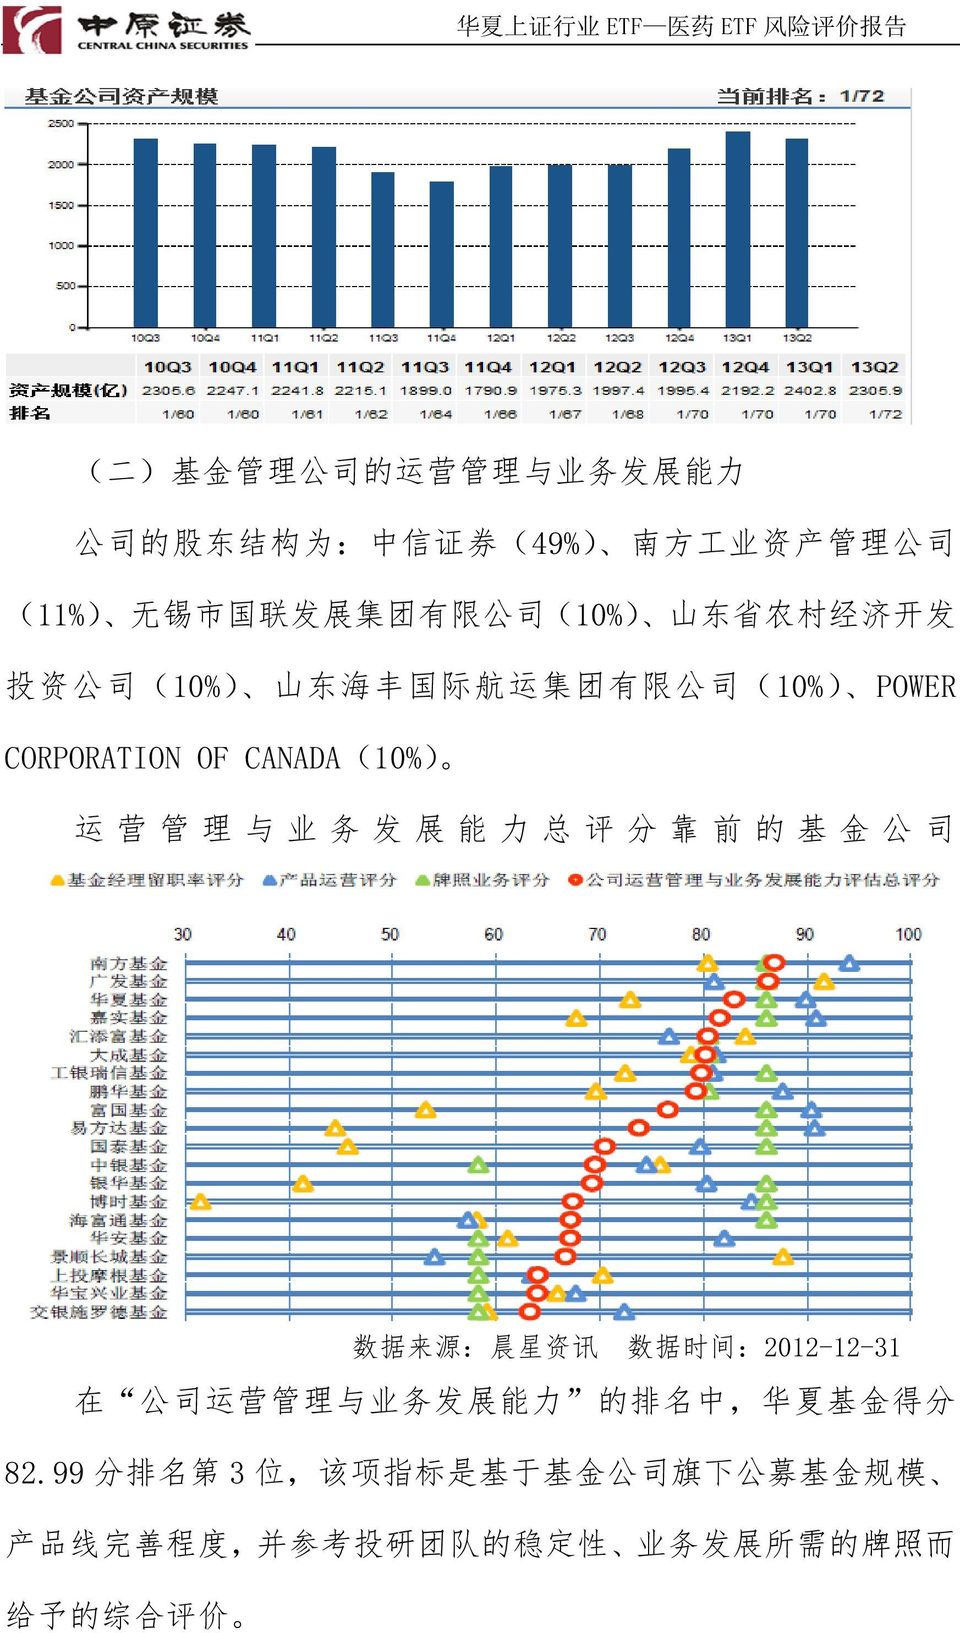 务 发 展 能 力 总 评 分 靠 前 的 基 金 公 司 数 据 来 源 : 晨 星 资 讯 数 据 时 间 :2012-12-31 在 公 司 运 营 管 理 与 业 务 发 展 能 力 的 排 名 中, 华 夏 基 金 得 分 82.